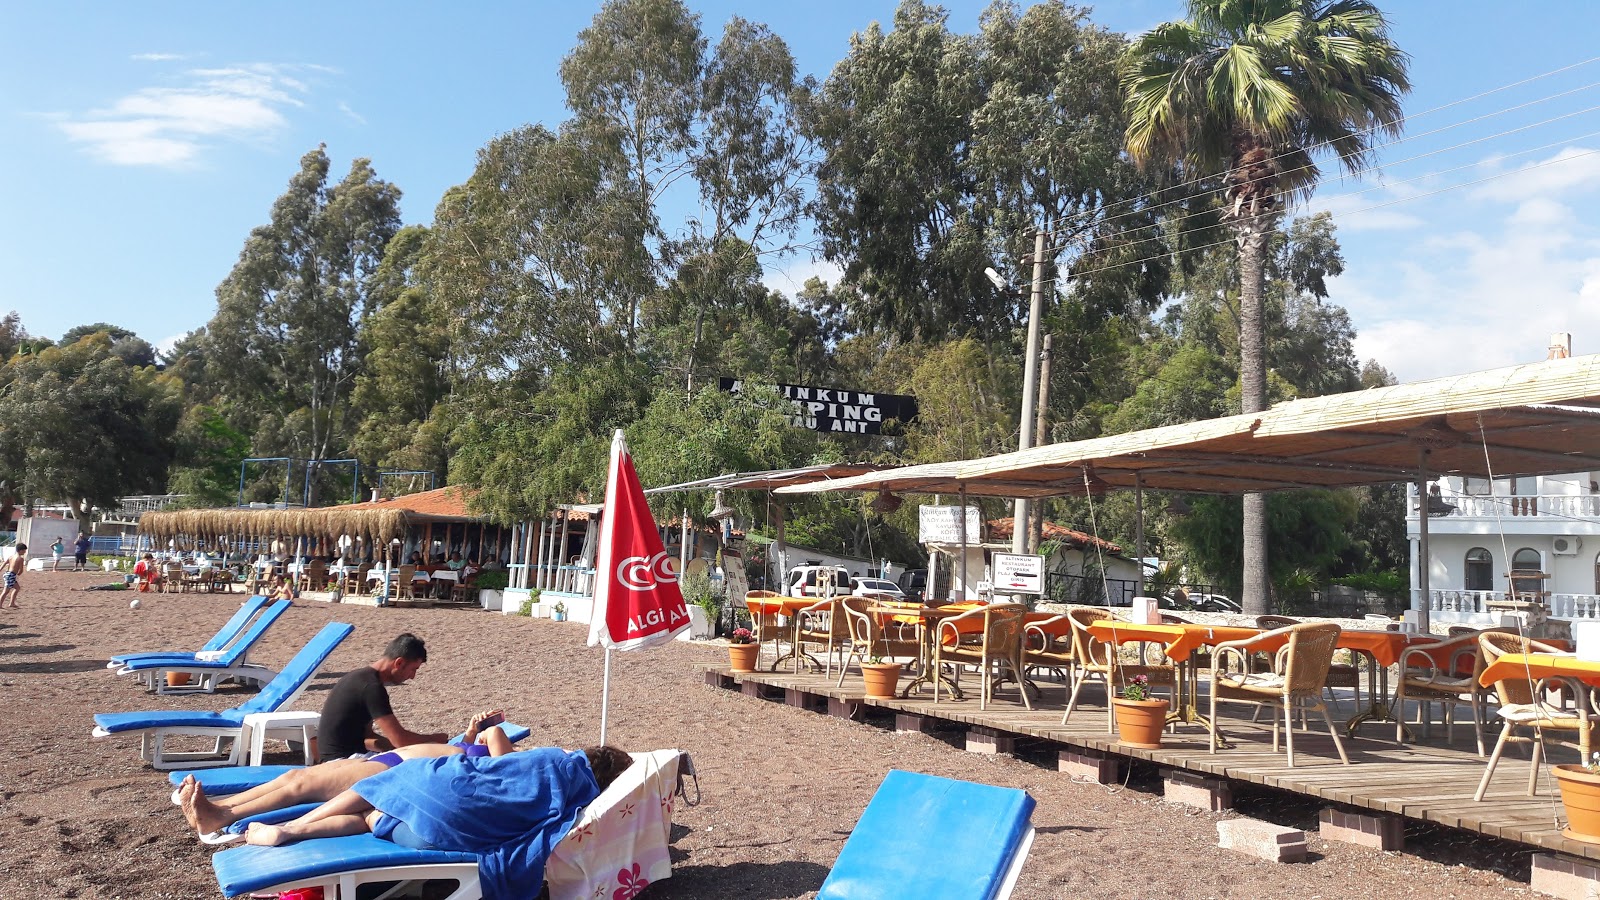 Zdjęcie Erine beach Club - popularne miejsce wśród znawców relaksu